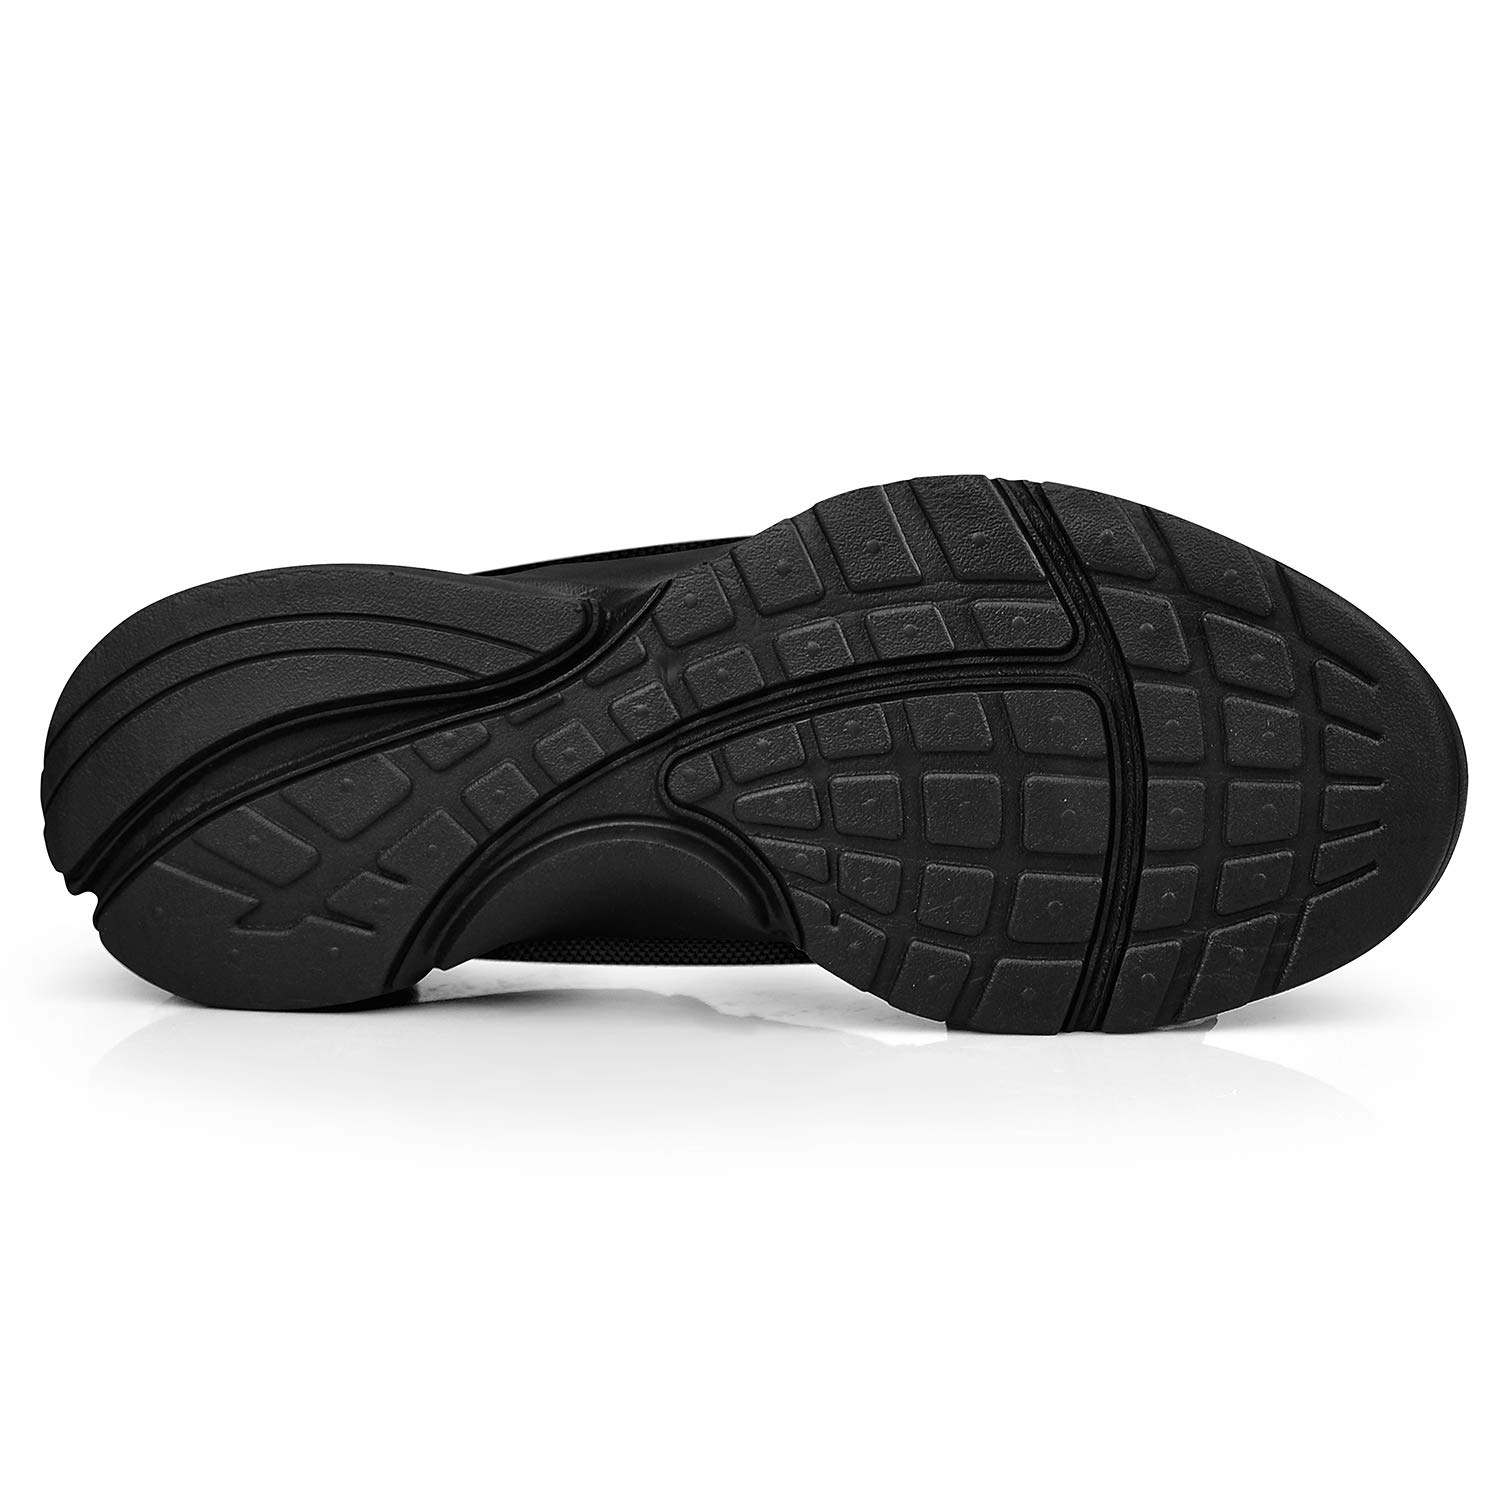 Feetmat Men's Non Slip Mesh Sneakers Lightweight Breathable, Black ...